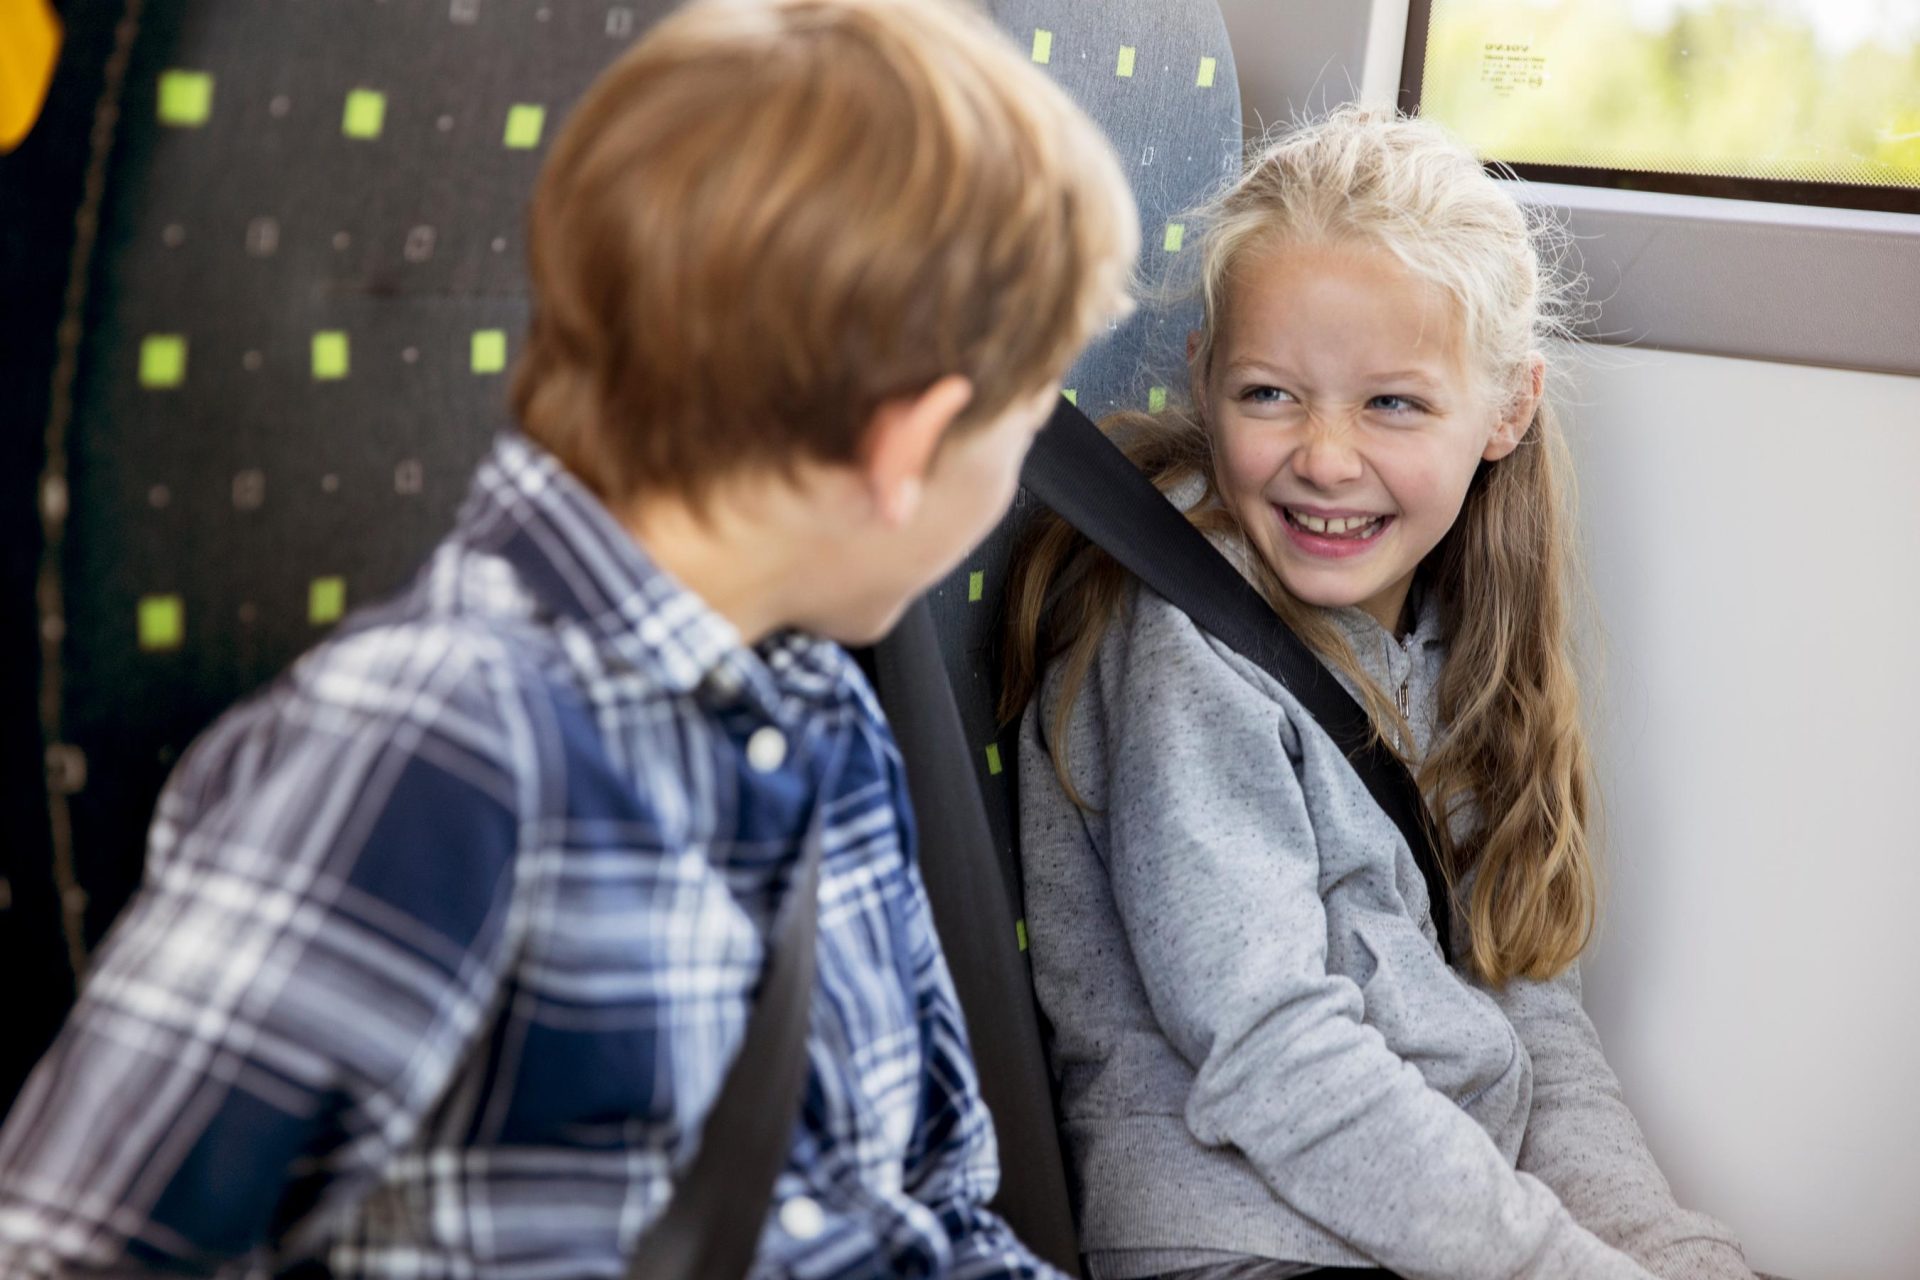 En ung gutt og jente som smiler og snakker på en buss, både sittende og med bilbelte. jenta virker underholdt, og gutten står vendt mot henne.